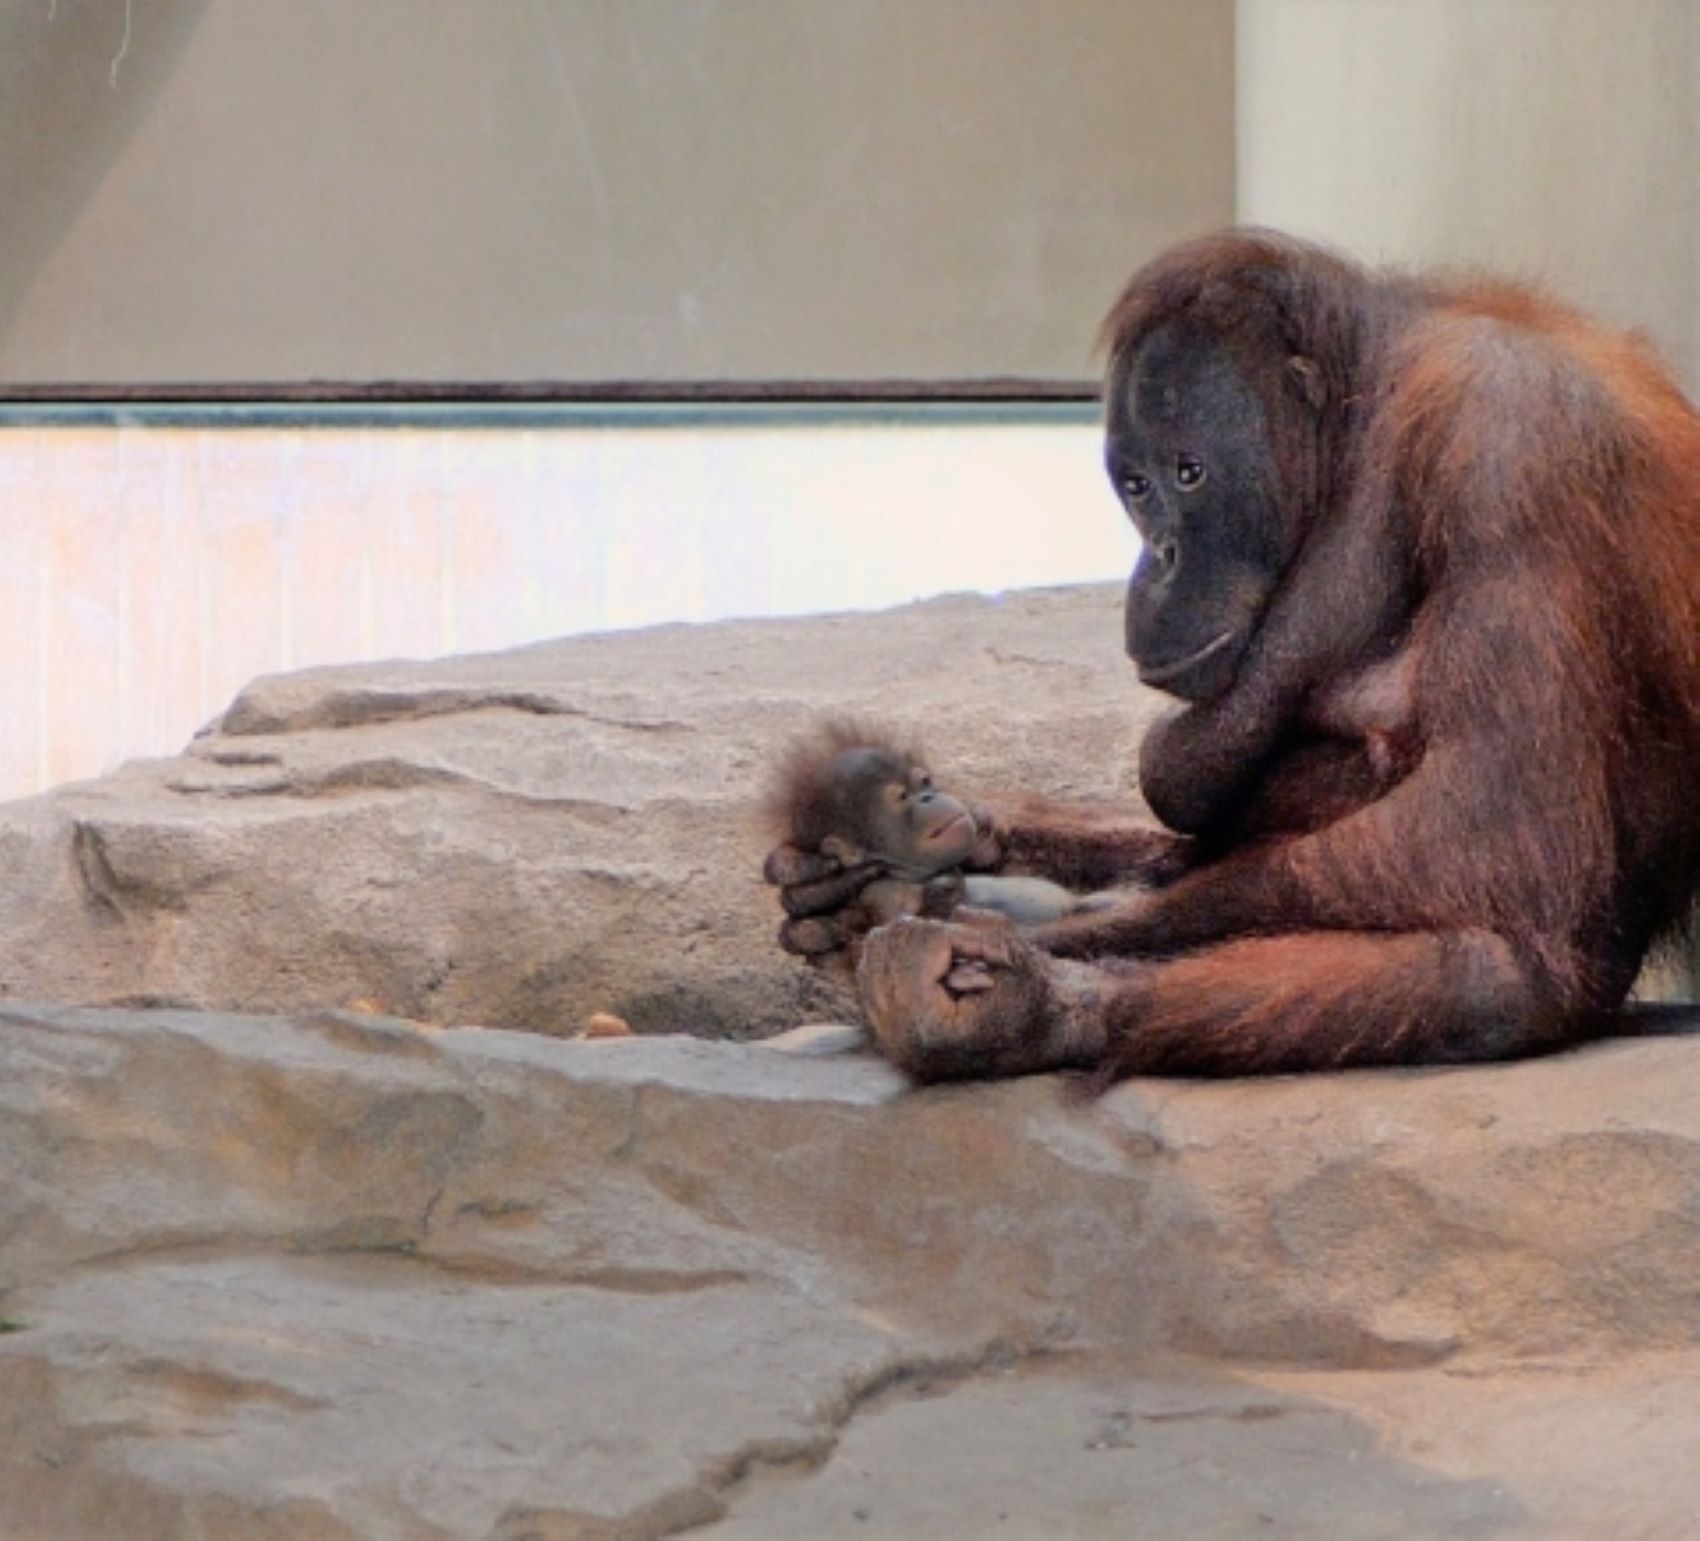 Mor una cria d'orangutan al Zoo de Barcelona